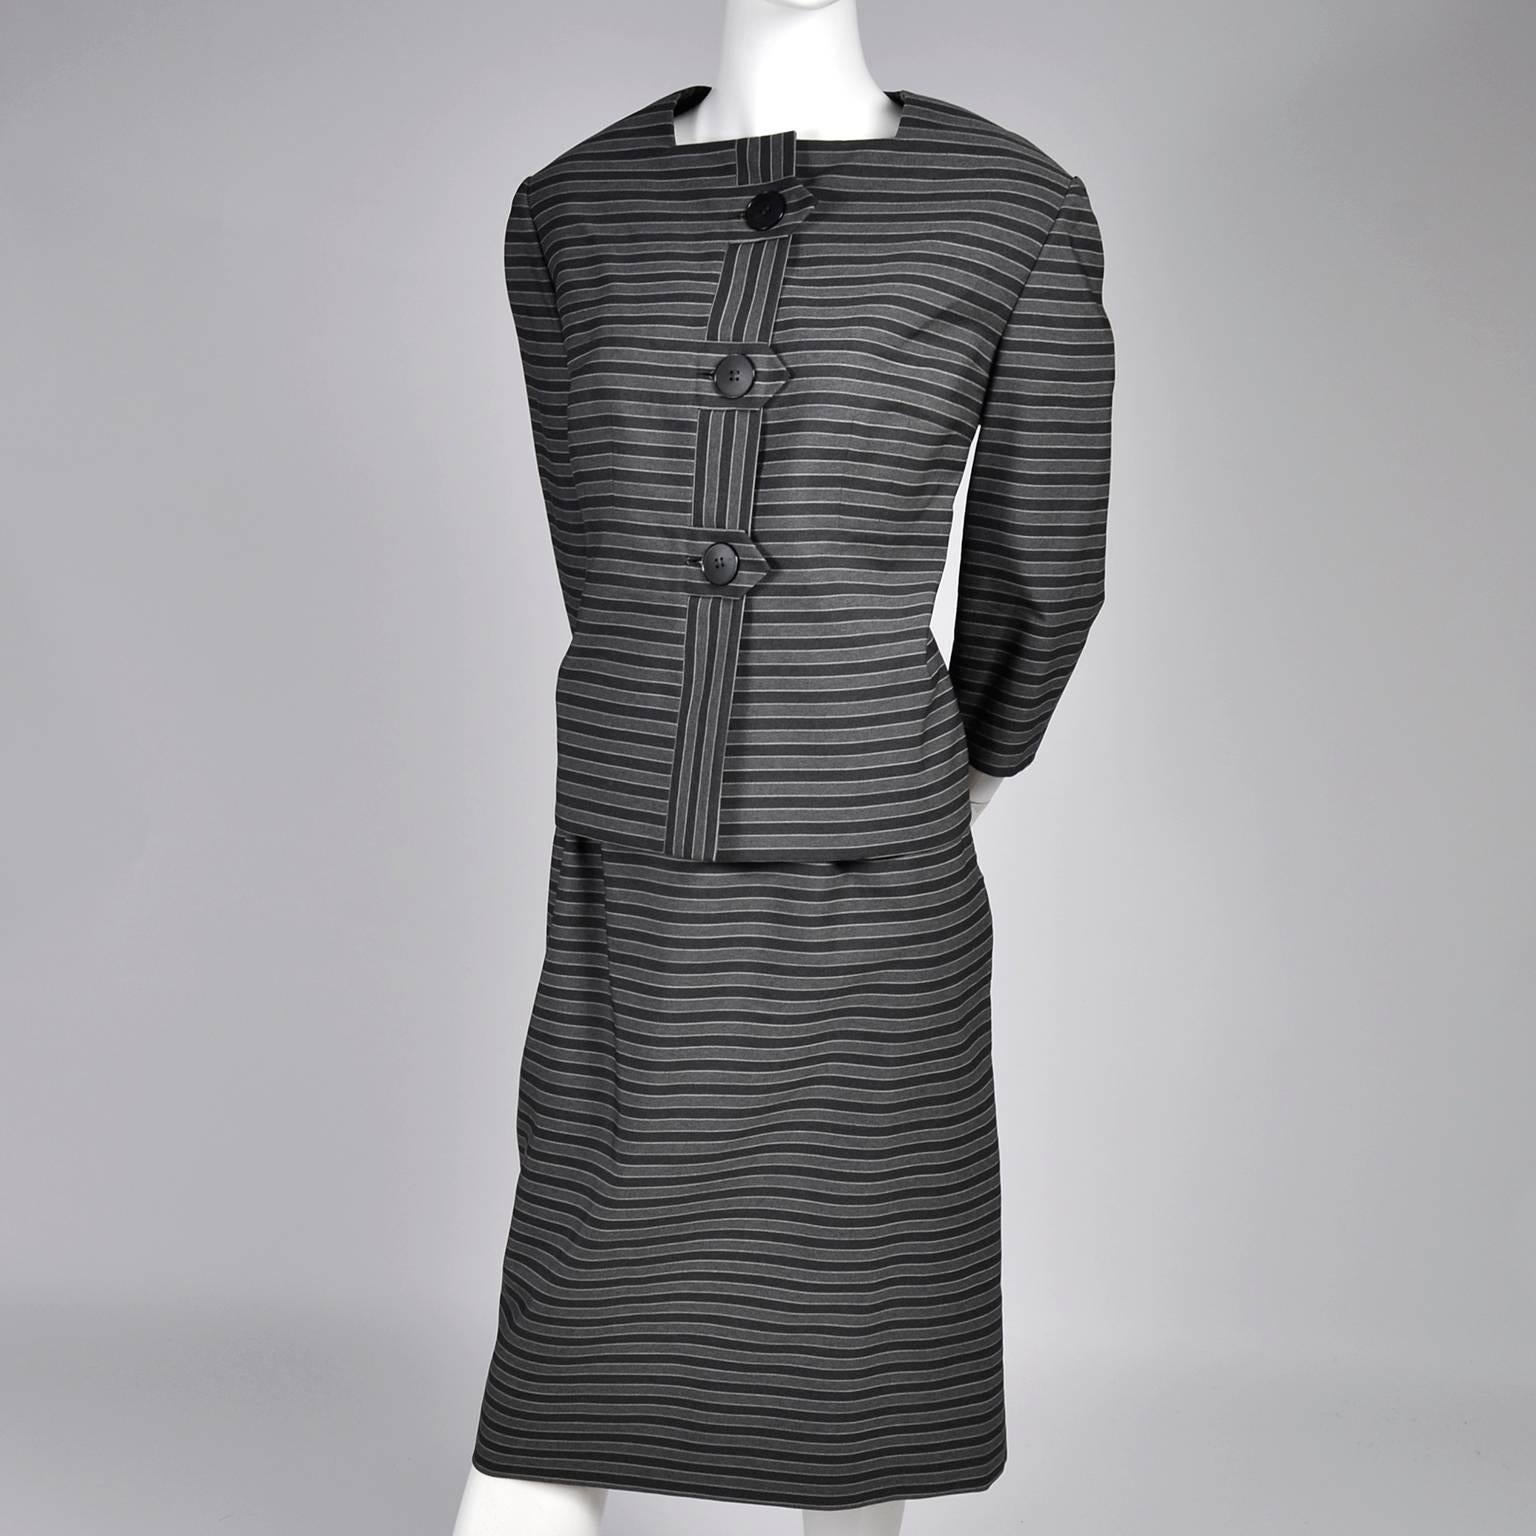 1960er Jahre Vintage Irene Lentz Anzug von Bullocks Wilshire in Grau und Schwarz gestreiften Streifen Damen